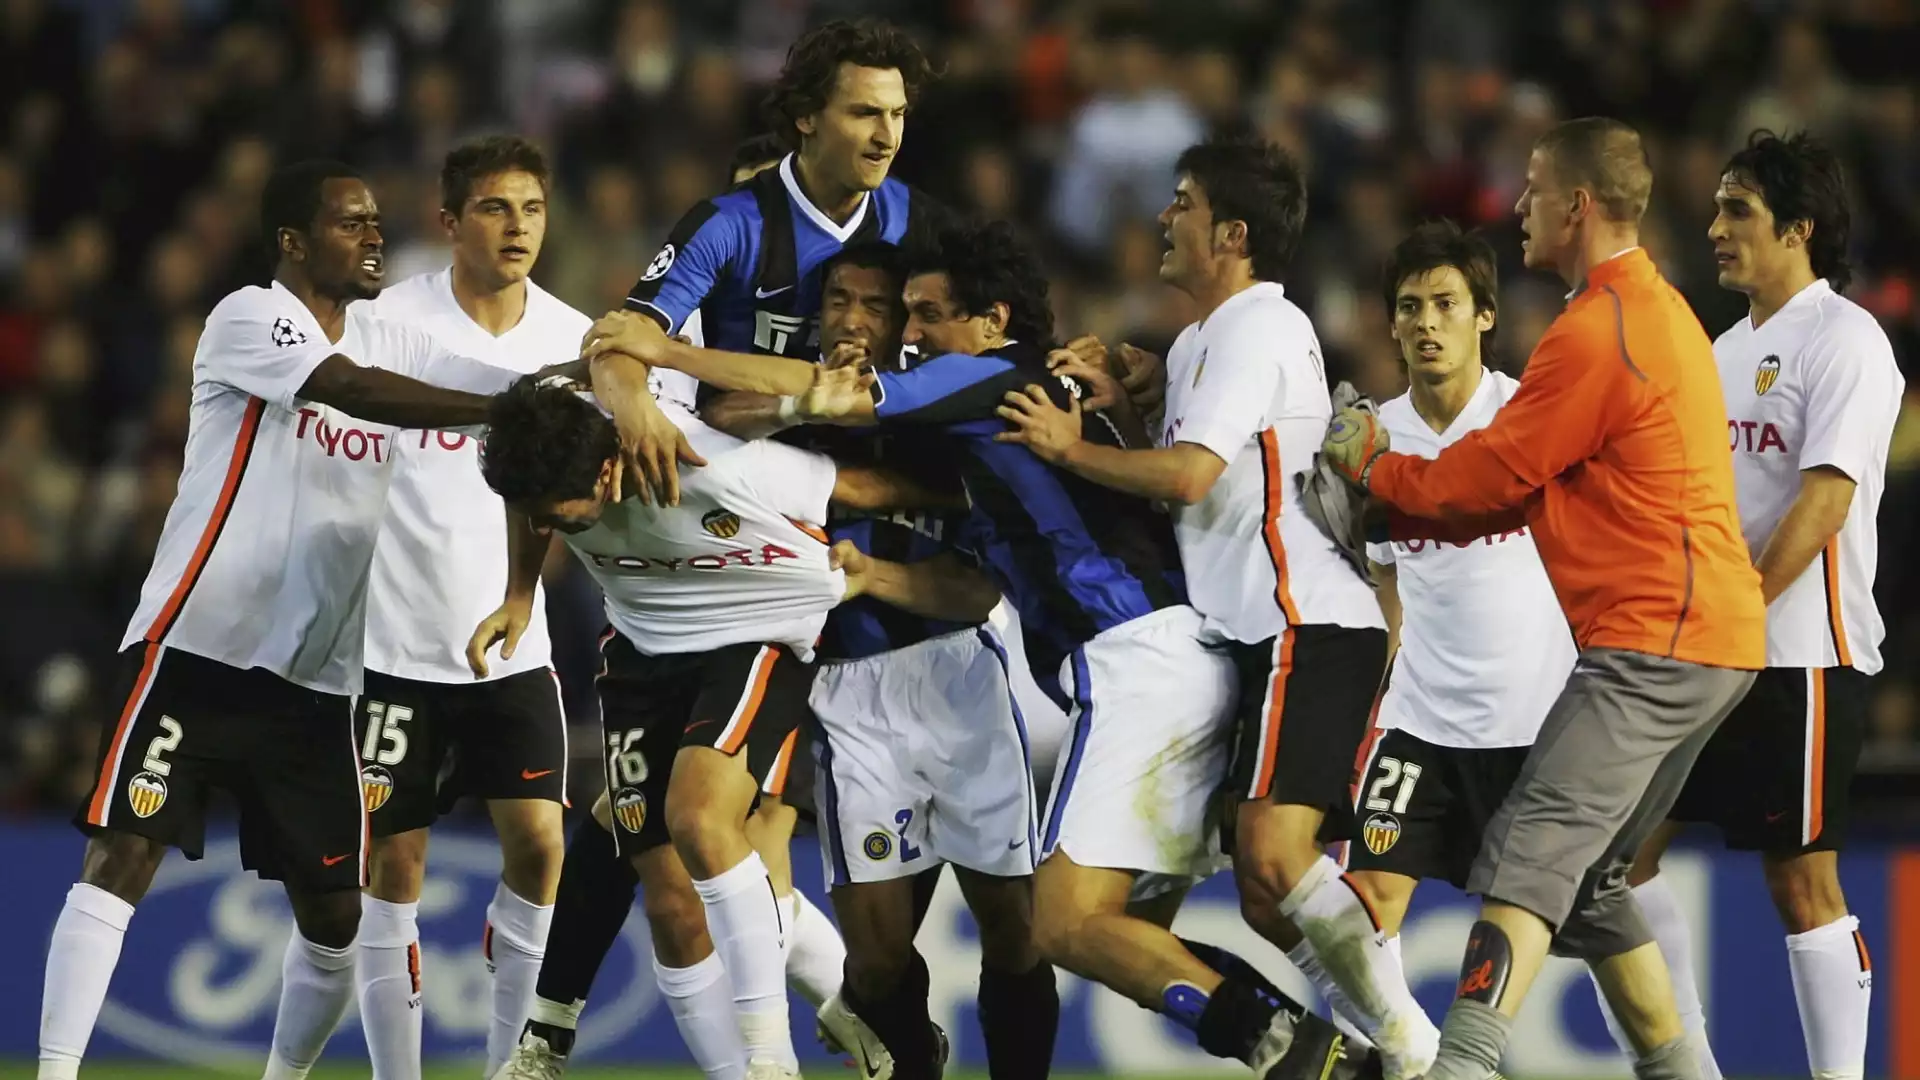 Valencia-Inter del 2007: la memorabile rissa nel finale della partita di Champions resterà negli annali, tutti contro tutti